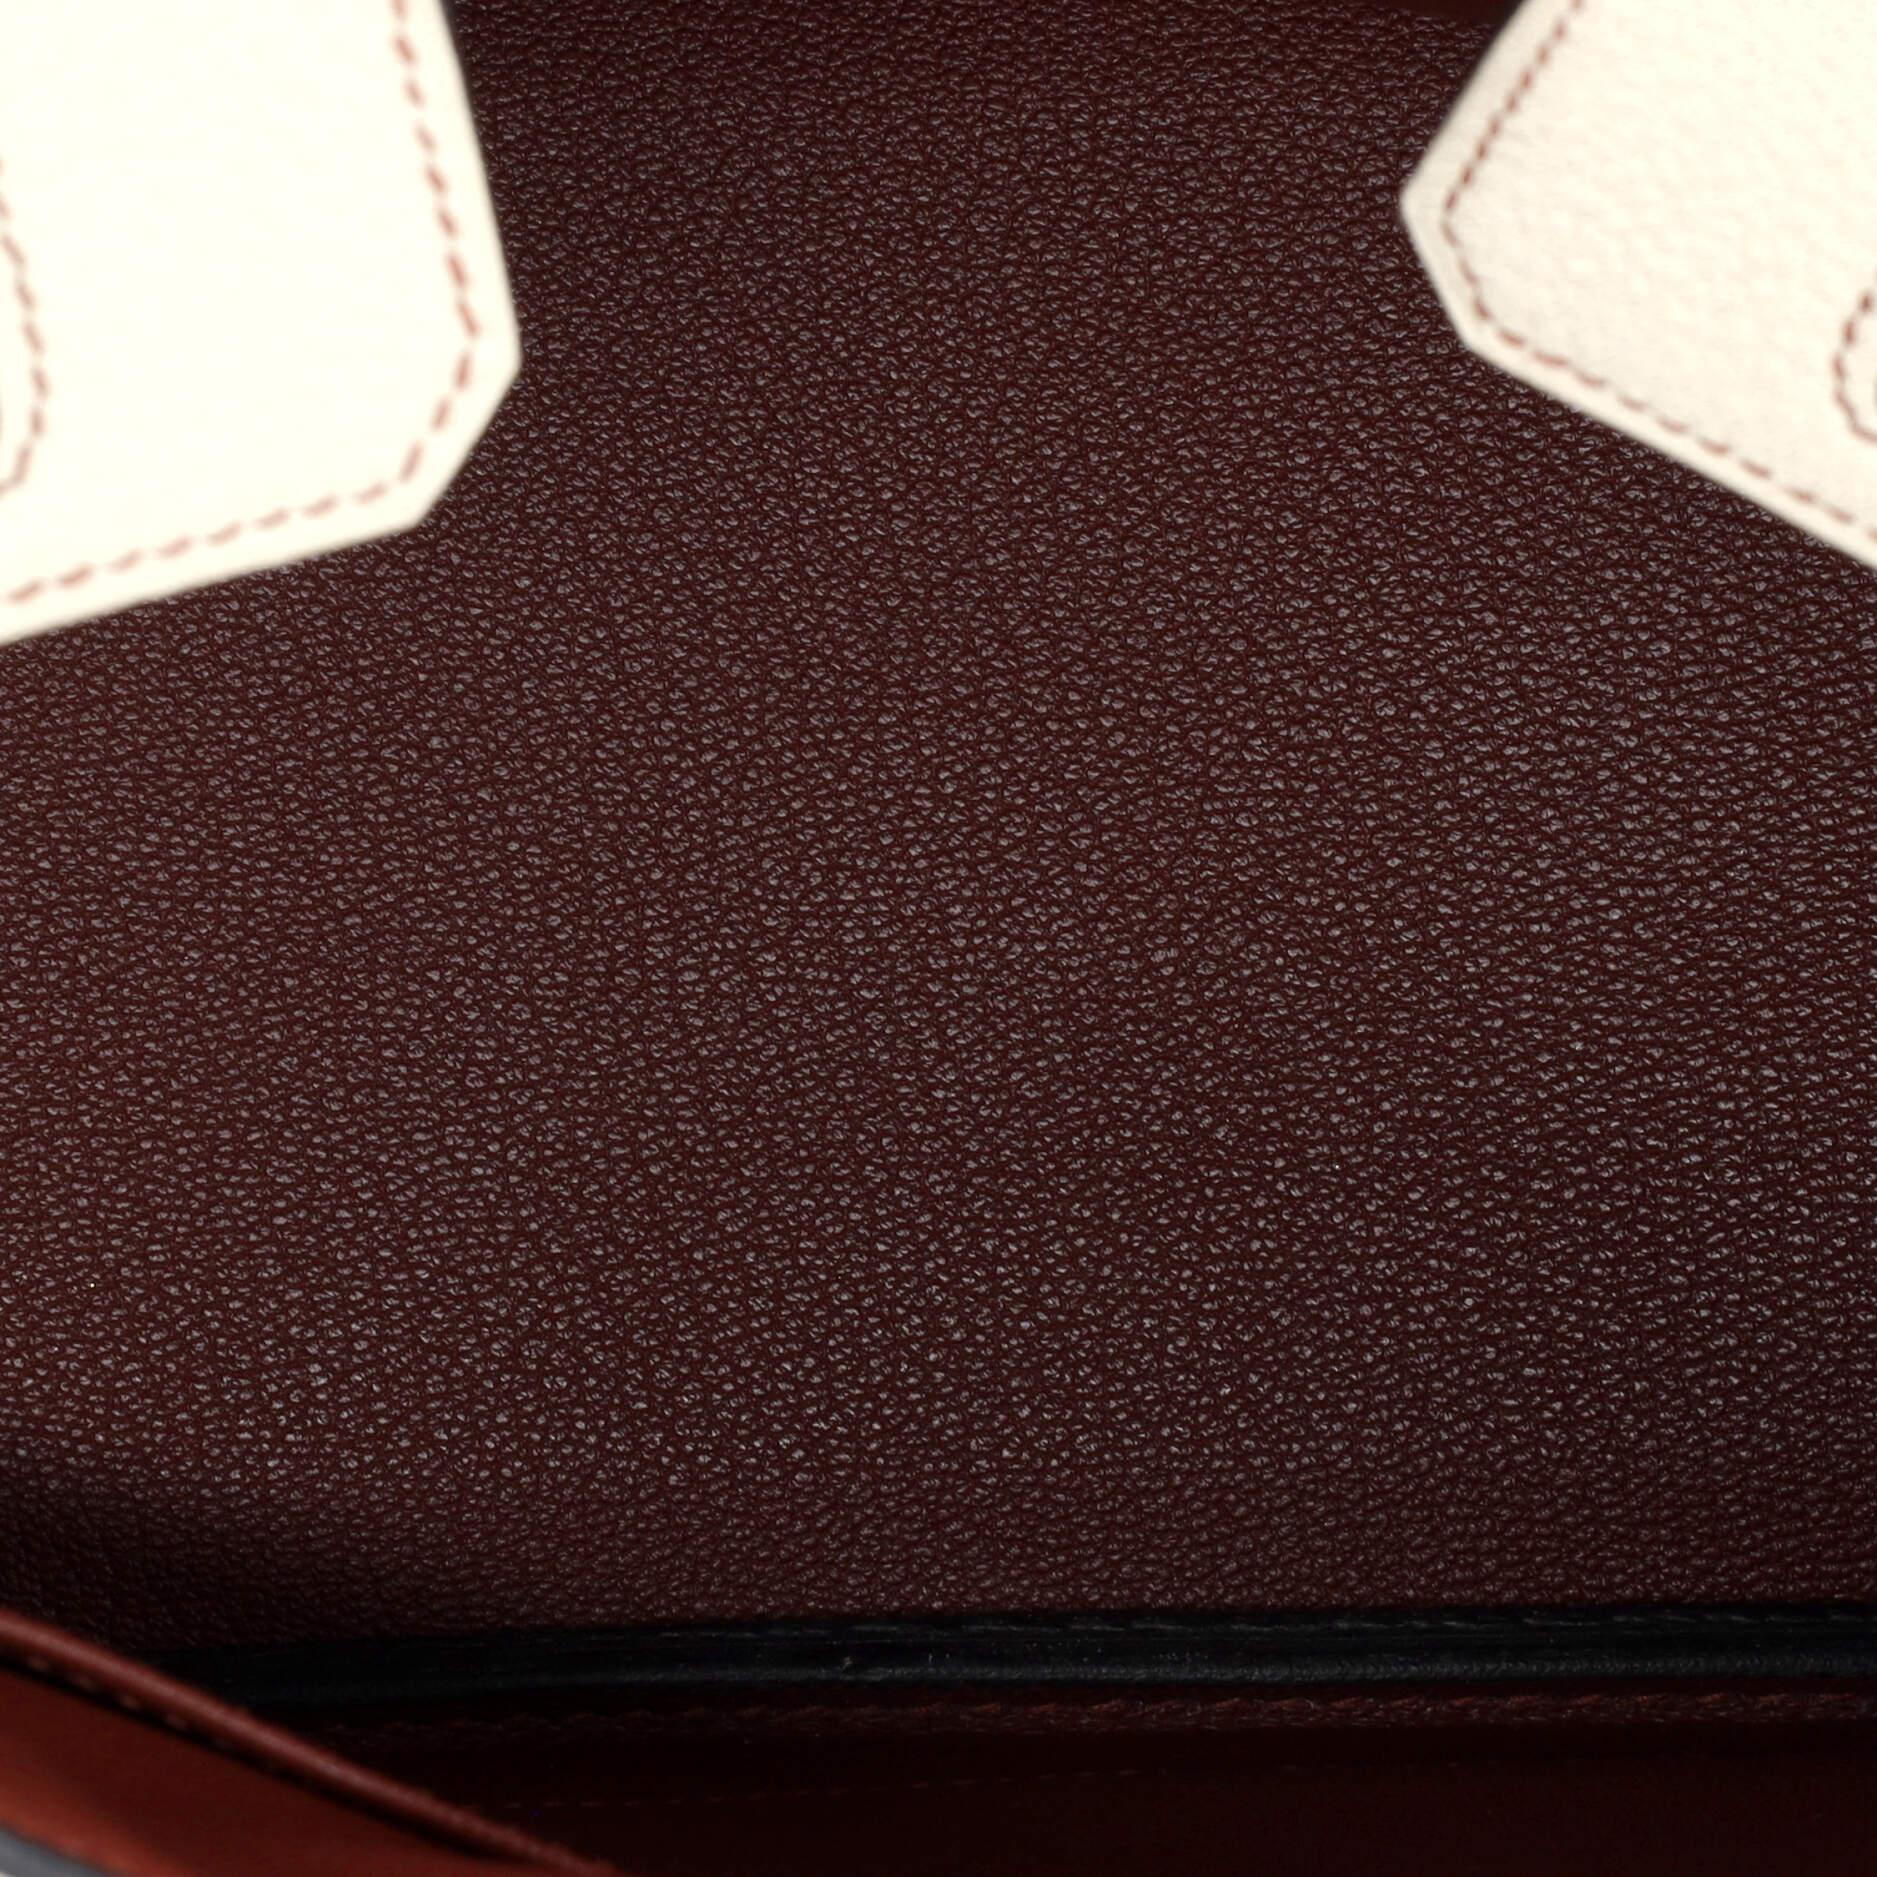 Hermes Birkin Handbag Bicolor Clemence with Brushed Gold Hardware 25 For Sale 3